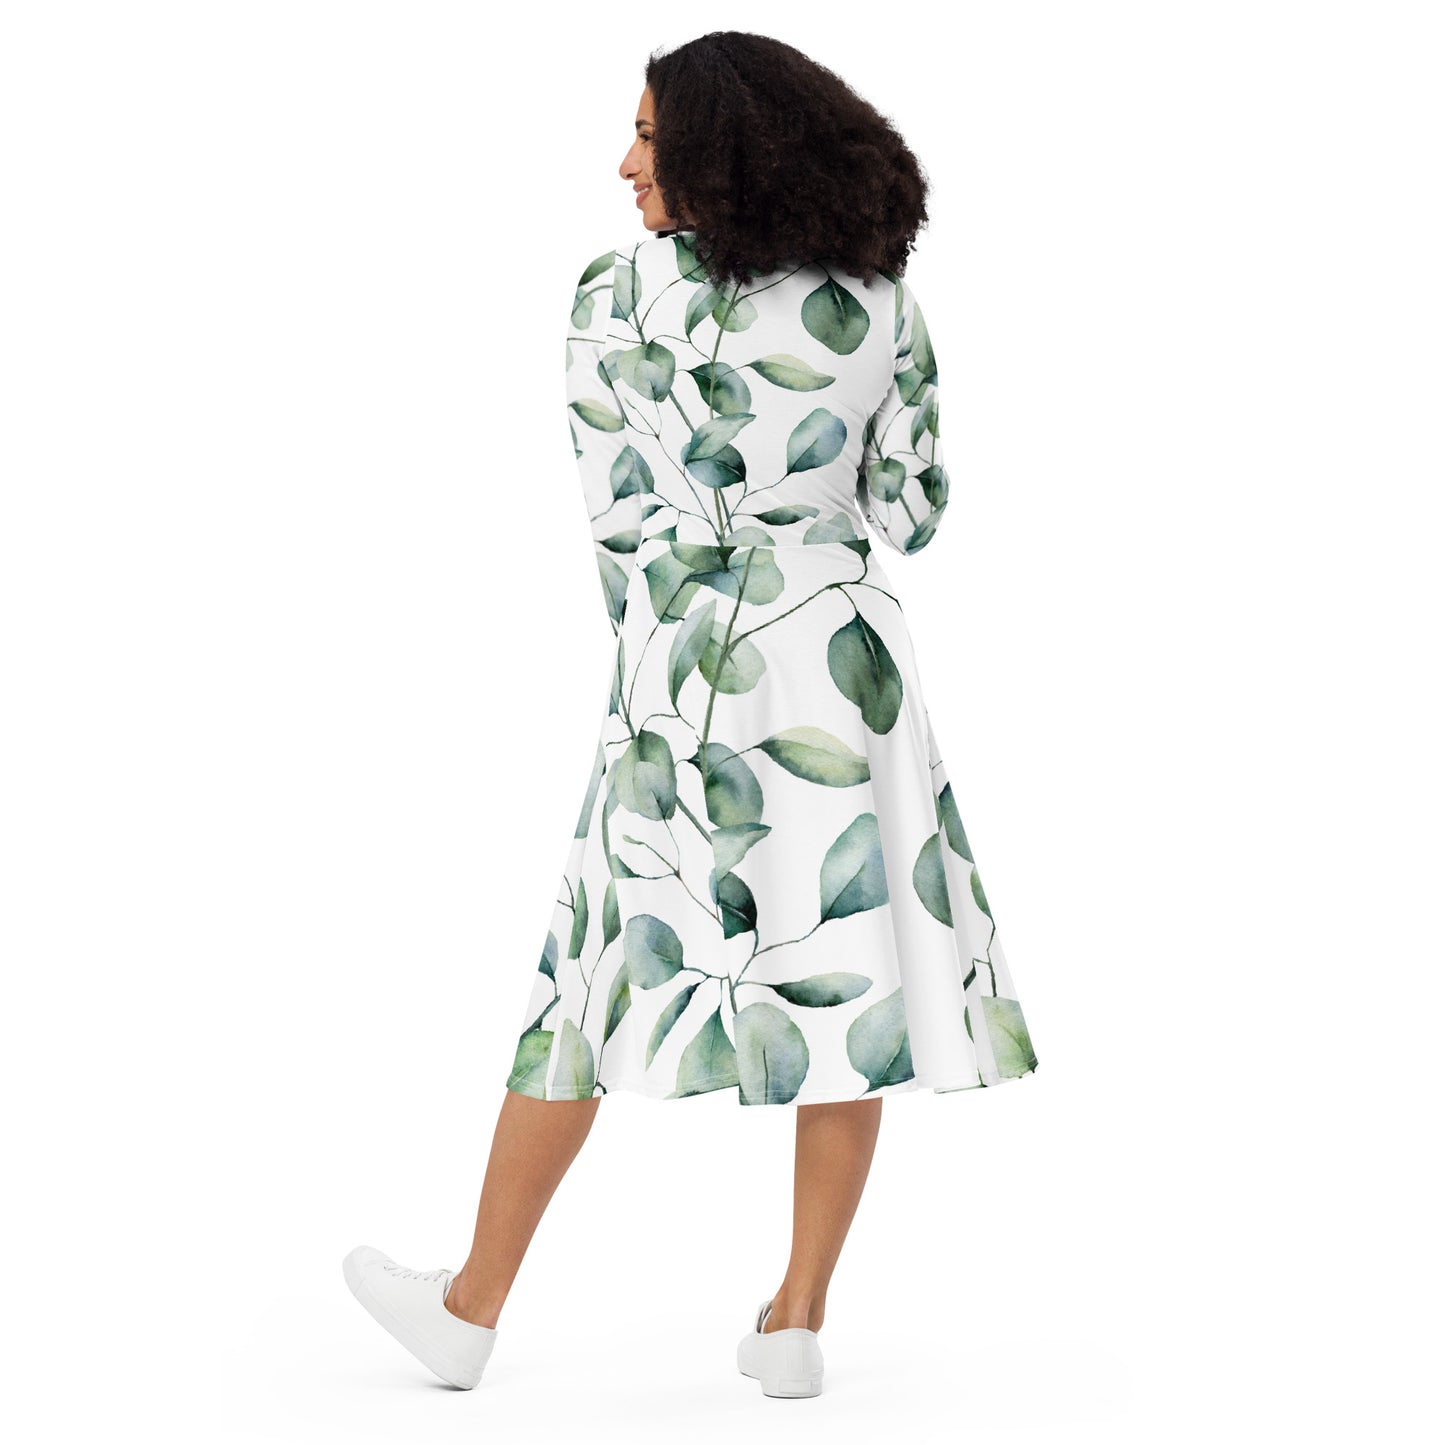 "Leaves" patterned long dress